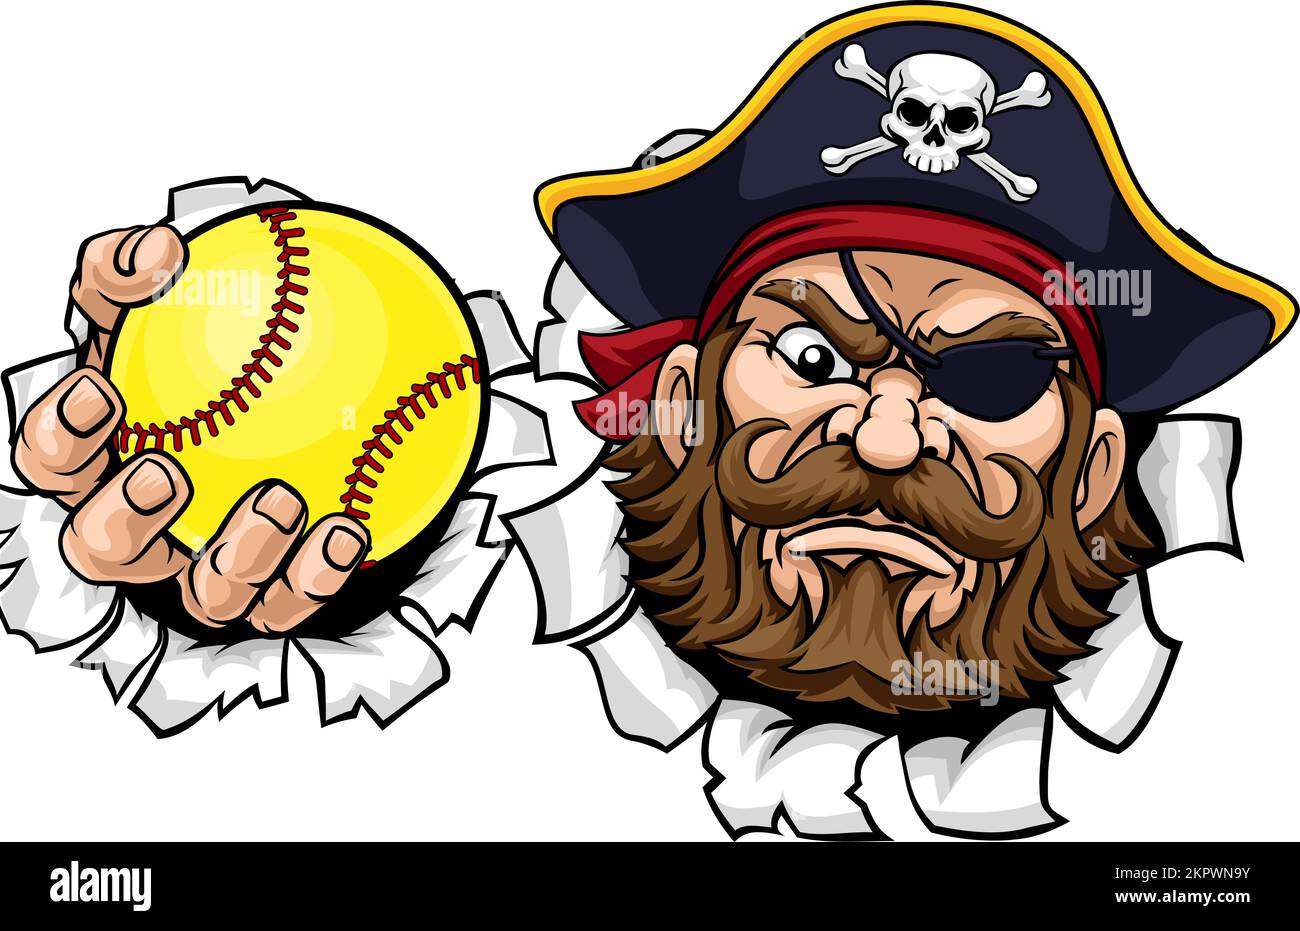 Pirata Equipo de Deportes de Softbol Cartoon Mascot Ilustración del Vector